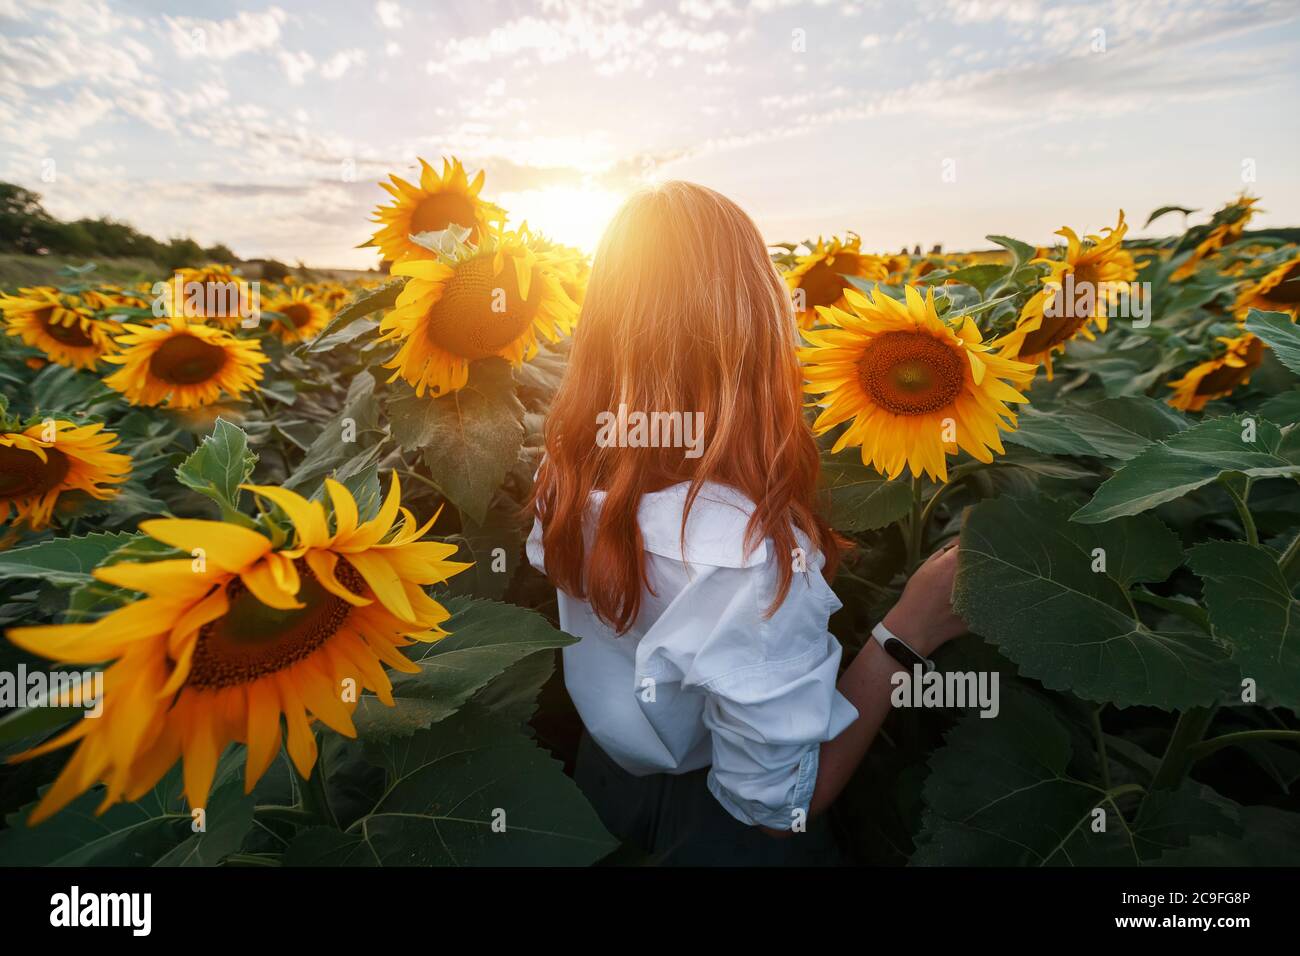 Une fille aux cheveux rouges dans un champ de tournesols regarde le coucher du soleil. Coucher de soleil, coucher de soleil dans un champ de tournesols. Vue arrière d'une jeune fille au milieu Banque D'Images